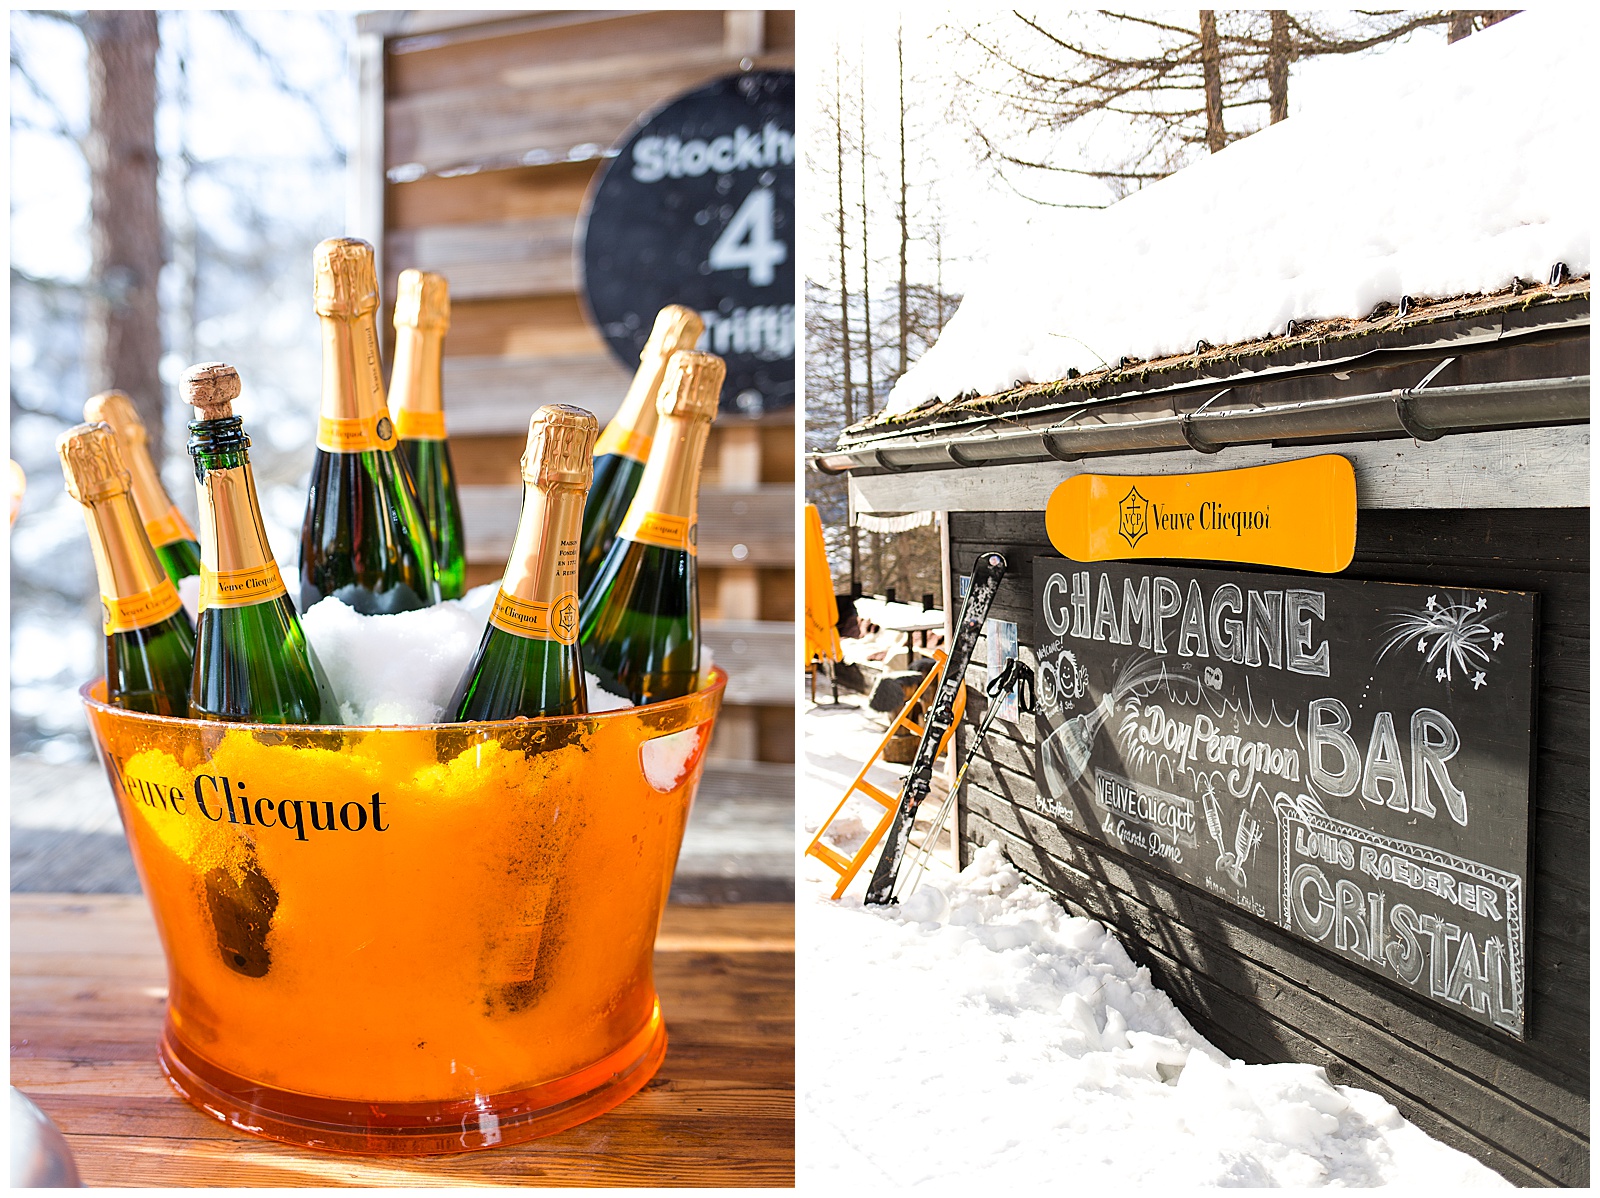 Veuve champagne bar in Zermatt Switzerland